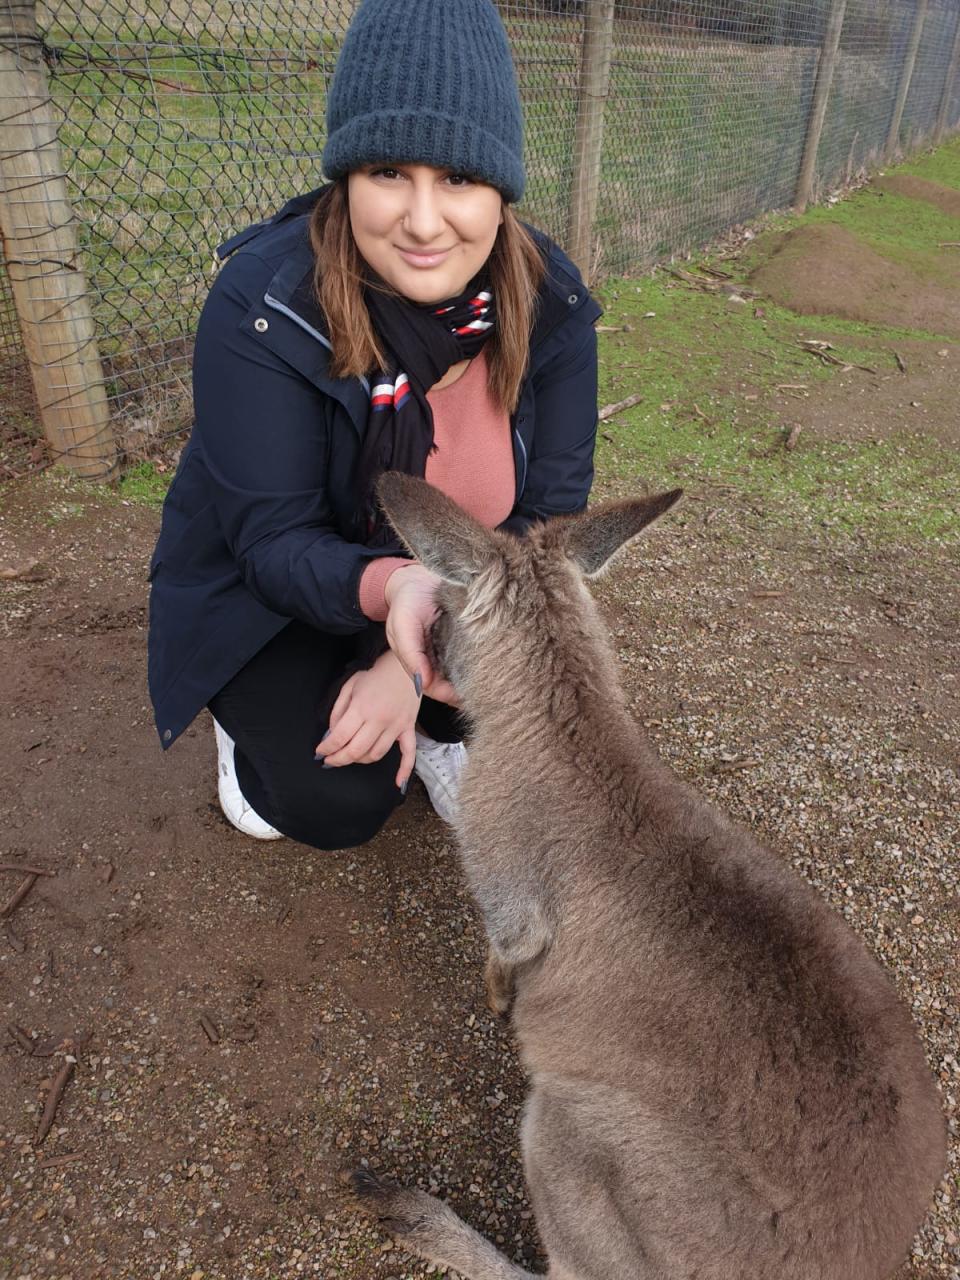 The 25-year-old is seen feeding a kangaroo.